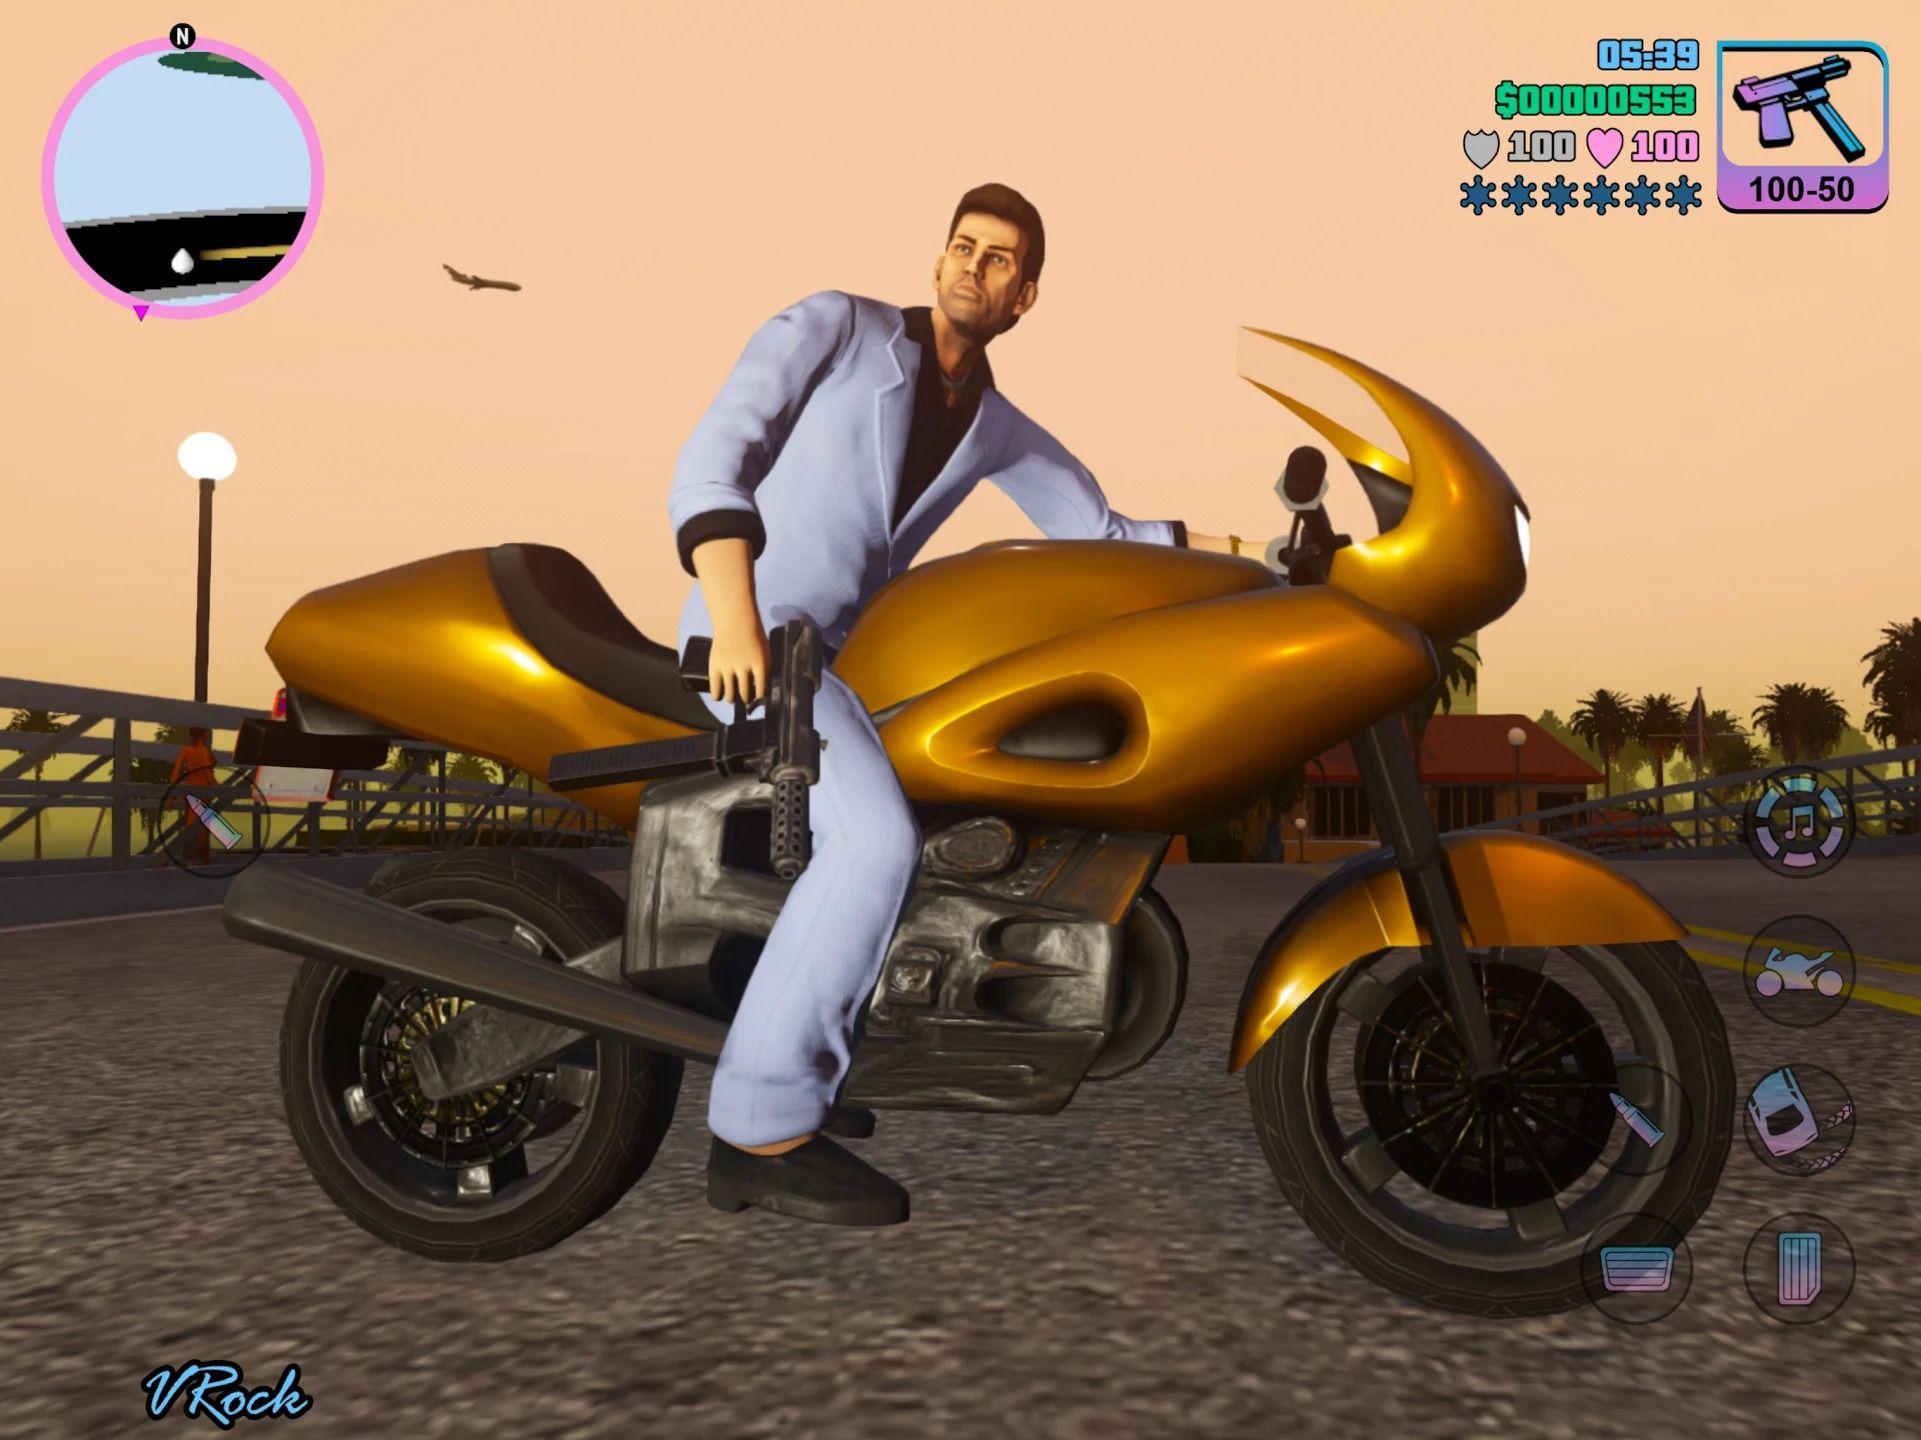 Captura de tela do GTA Vice City mostrando um homem de terno azul em uma motocicleta dourada